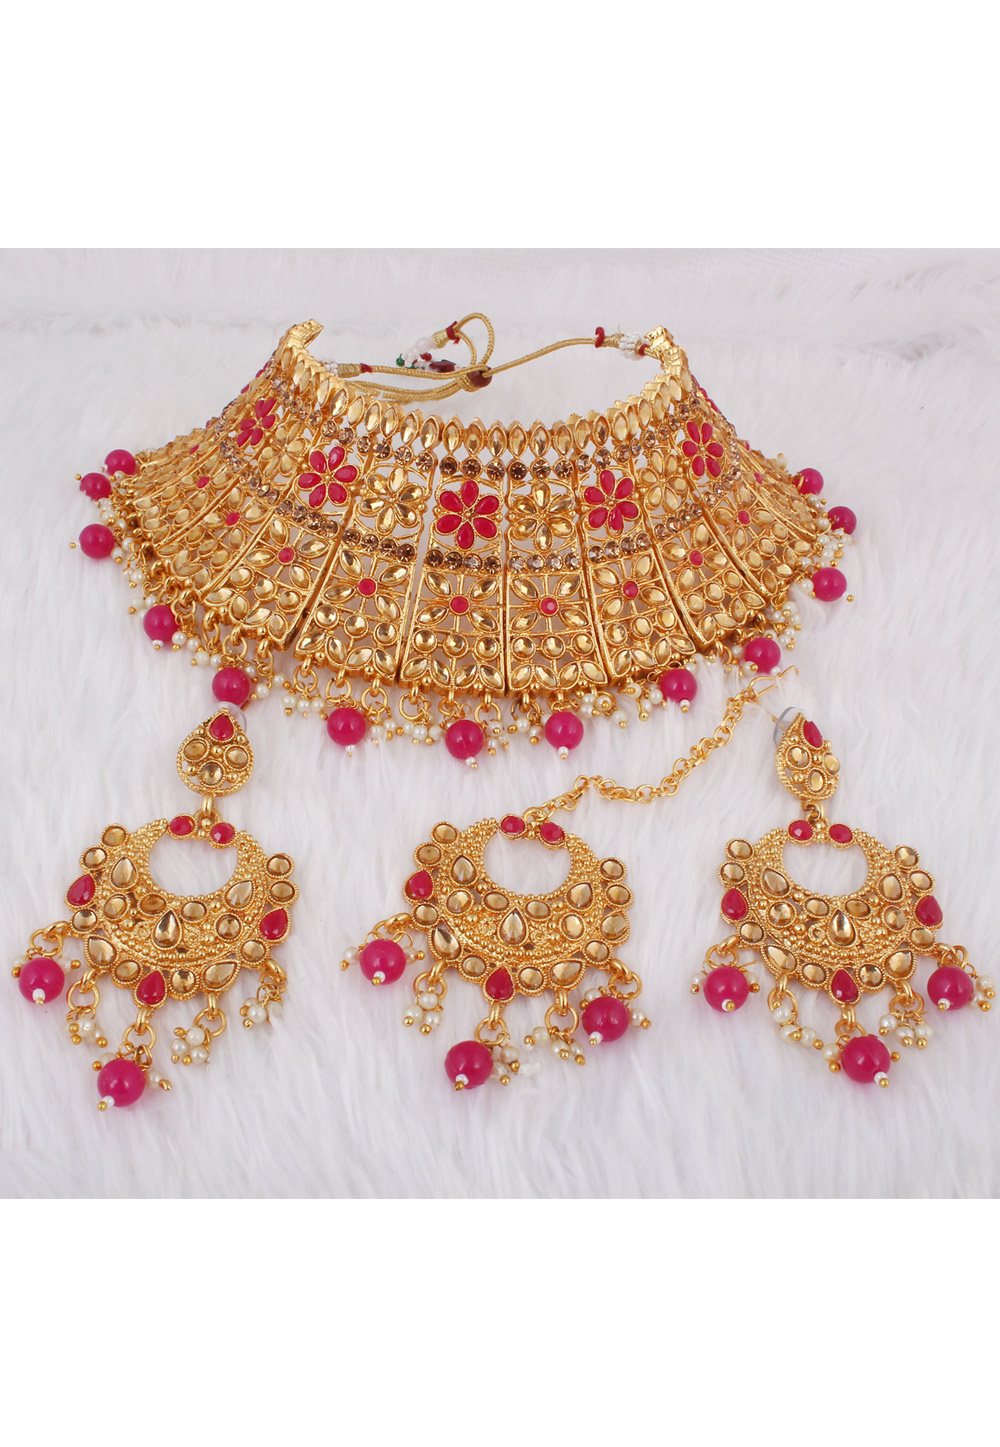 Necklace Set Below 500 - Buy Necklace Set Below 500 online at Best Prices  in India